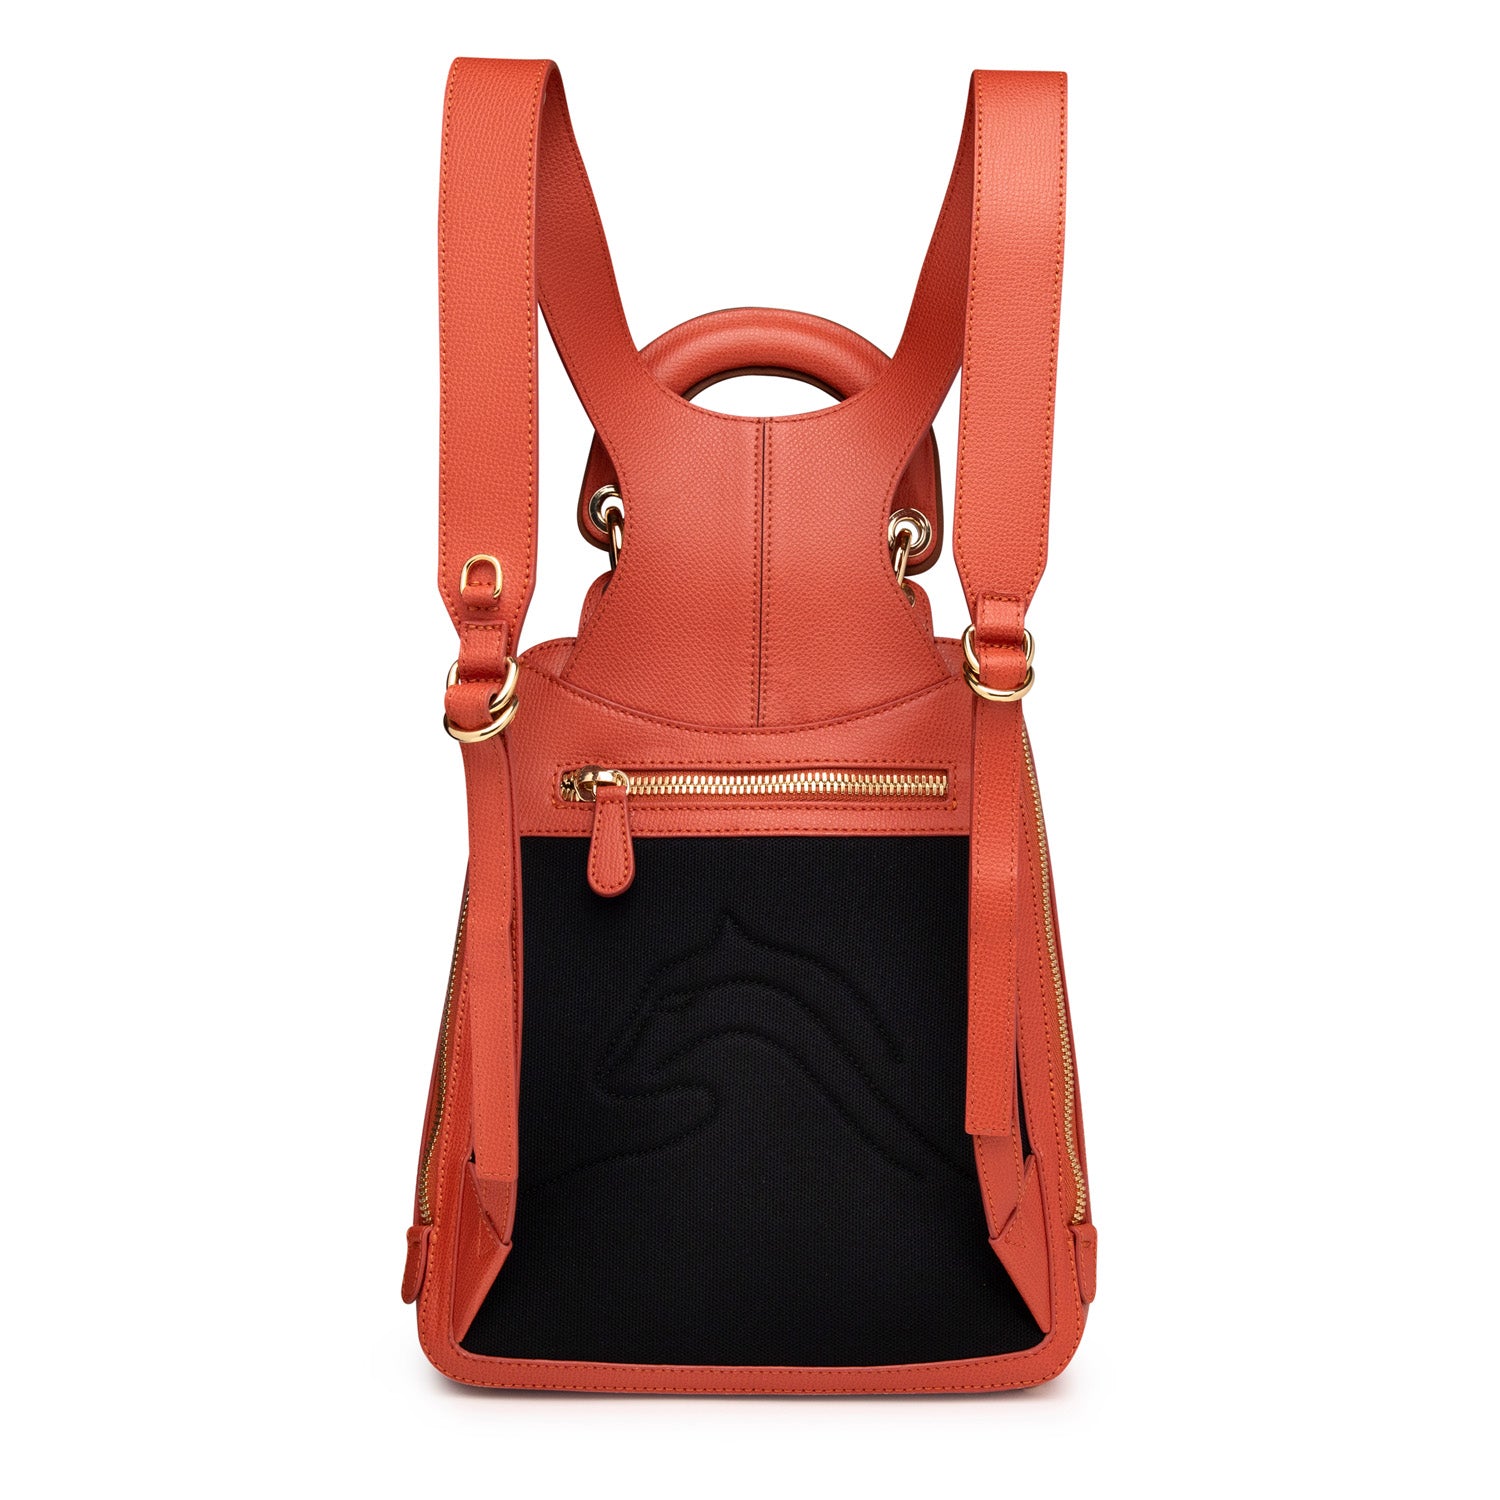 Racer Mini: Women's Designer Backpack in Orange Leather